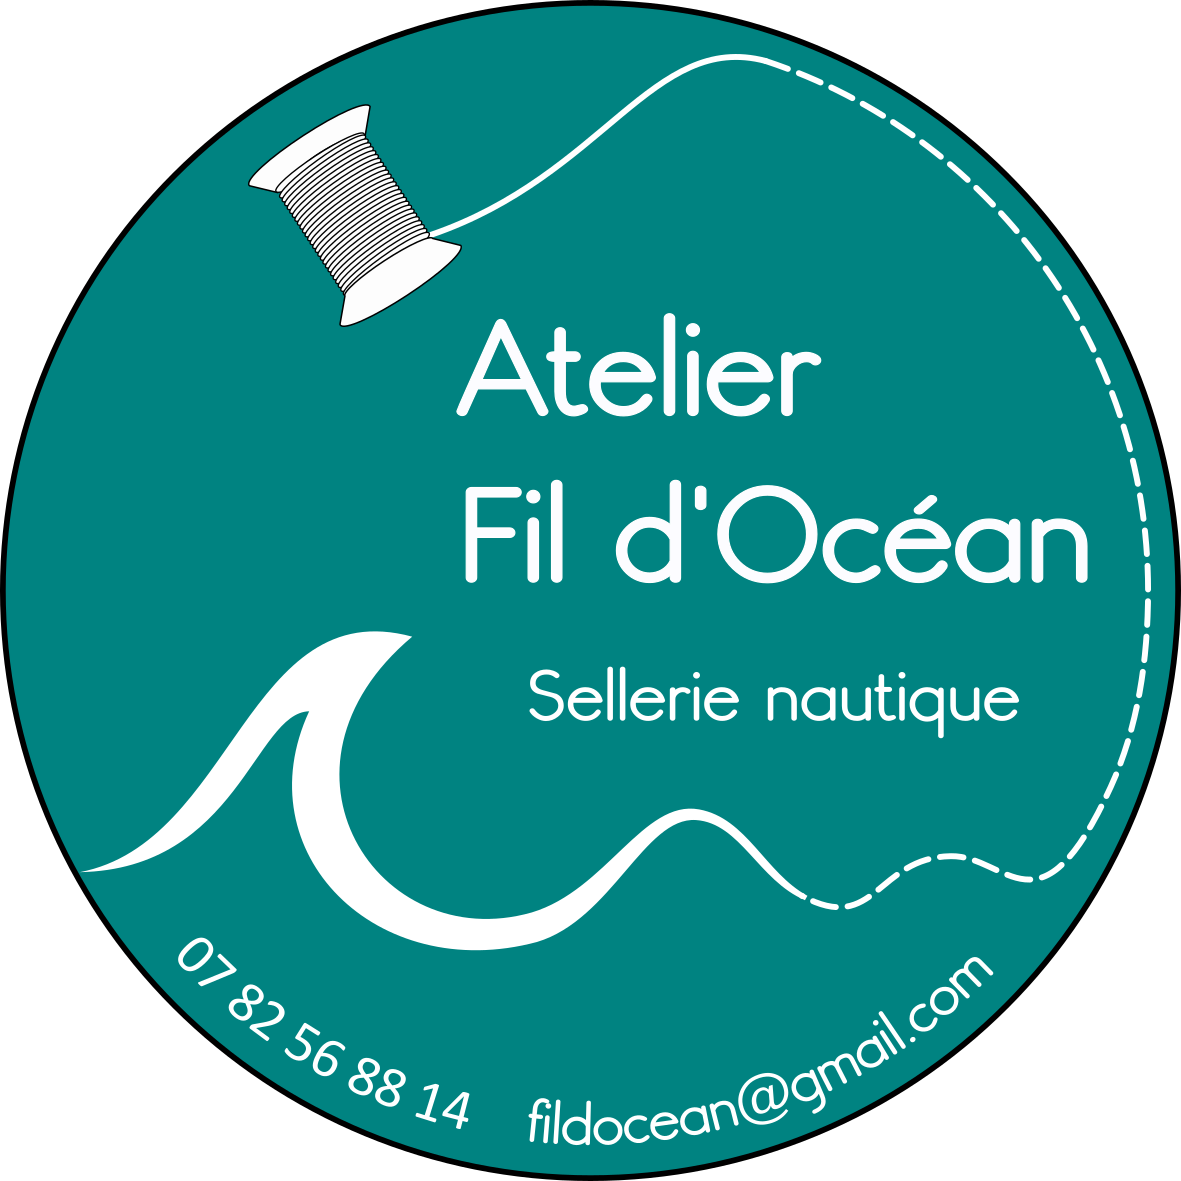 Atelier Fil d'Océan – Sellerie nautique